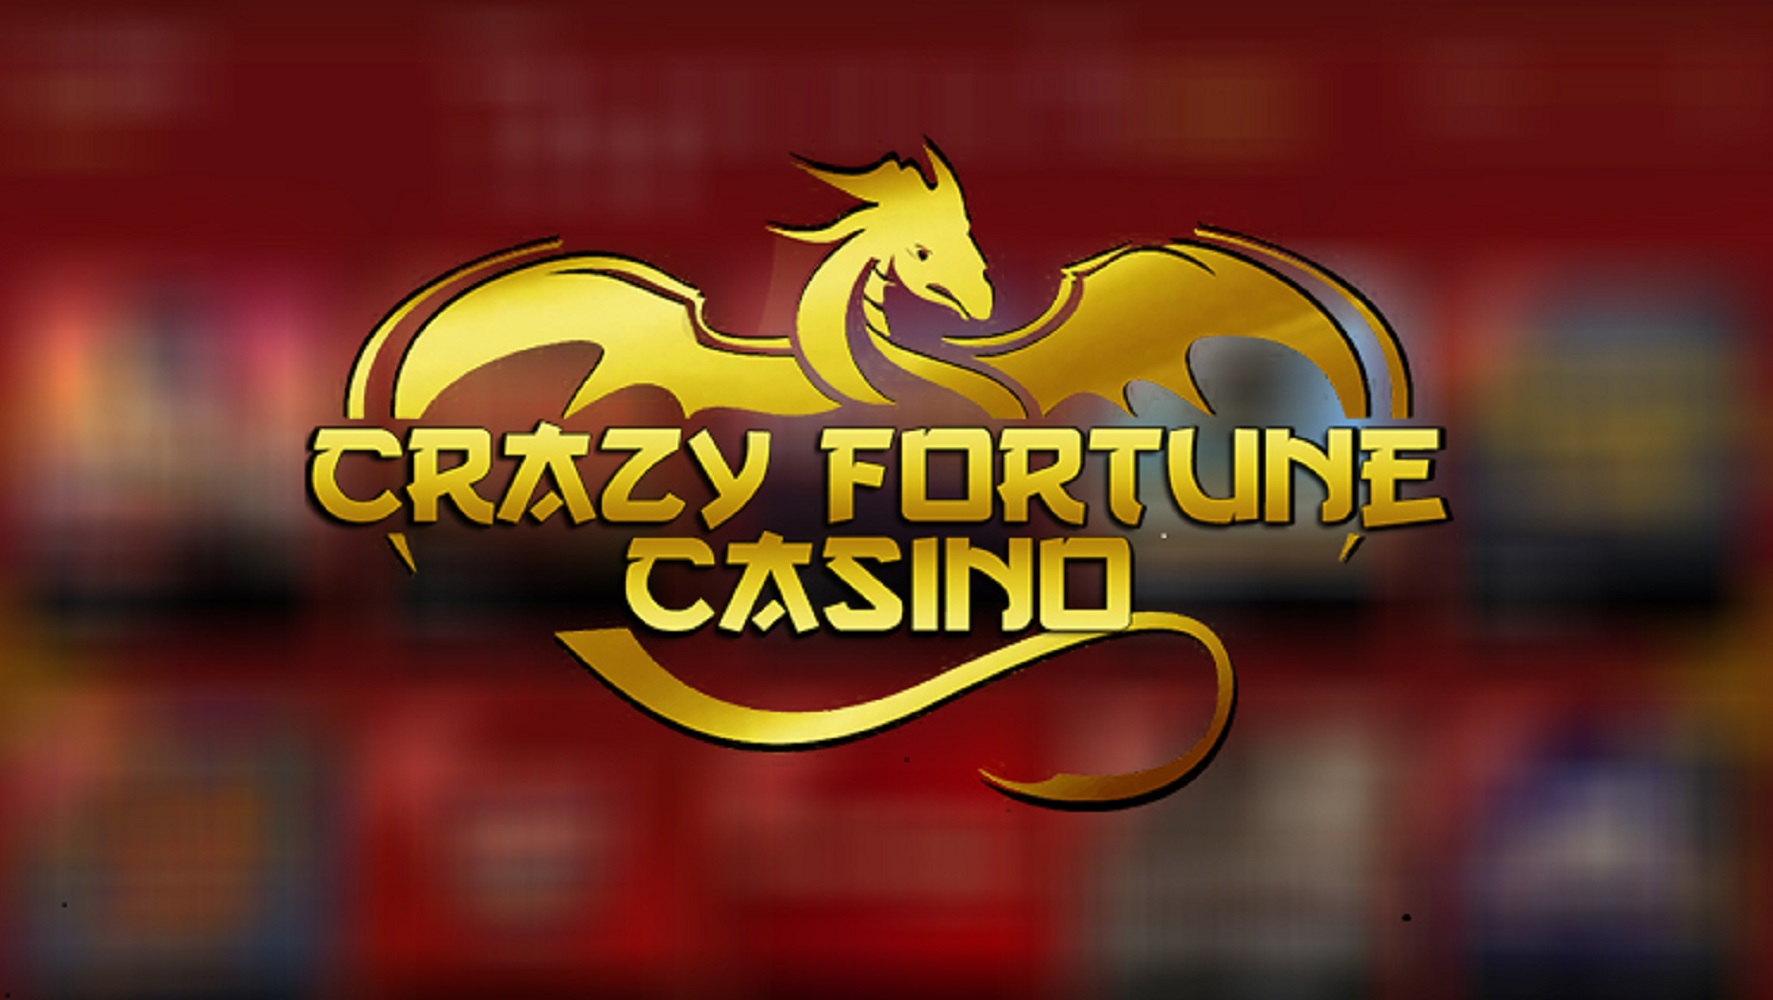 Crazy Fortune casino